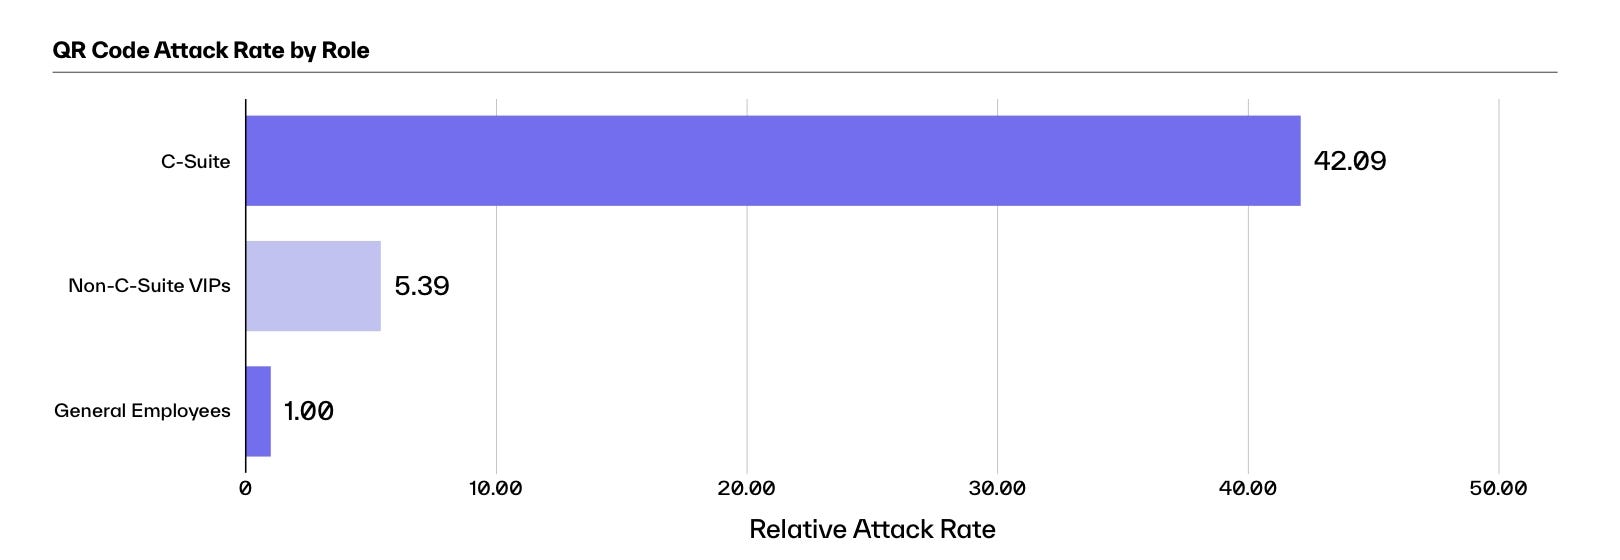 Role göre qr saldırılarının çubuk grafiği